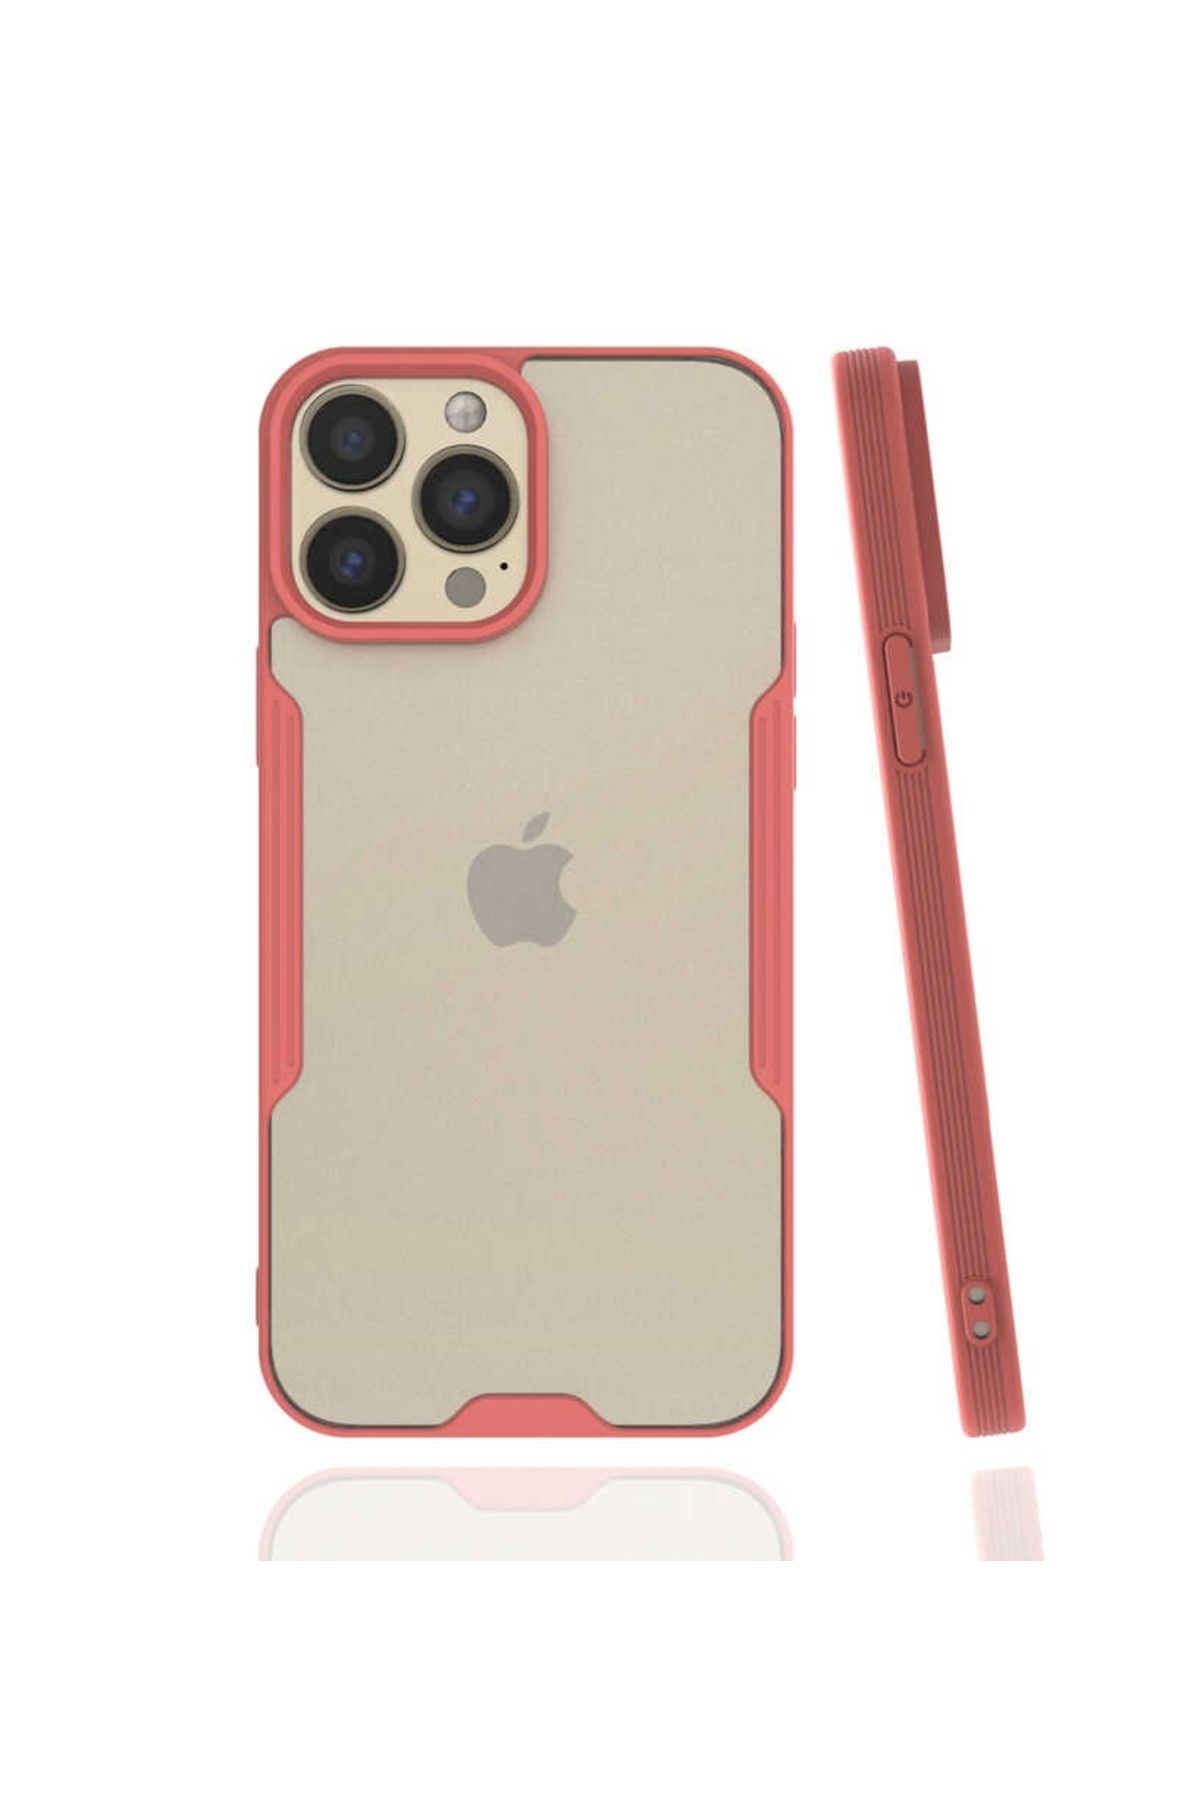 Lopard Apple iPhone 13 Pro Max Kılıf Parfe Silikon Kapak Kamera Korumalı Kılıf Ultra Ince Buzlu Mat Renkli